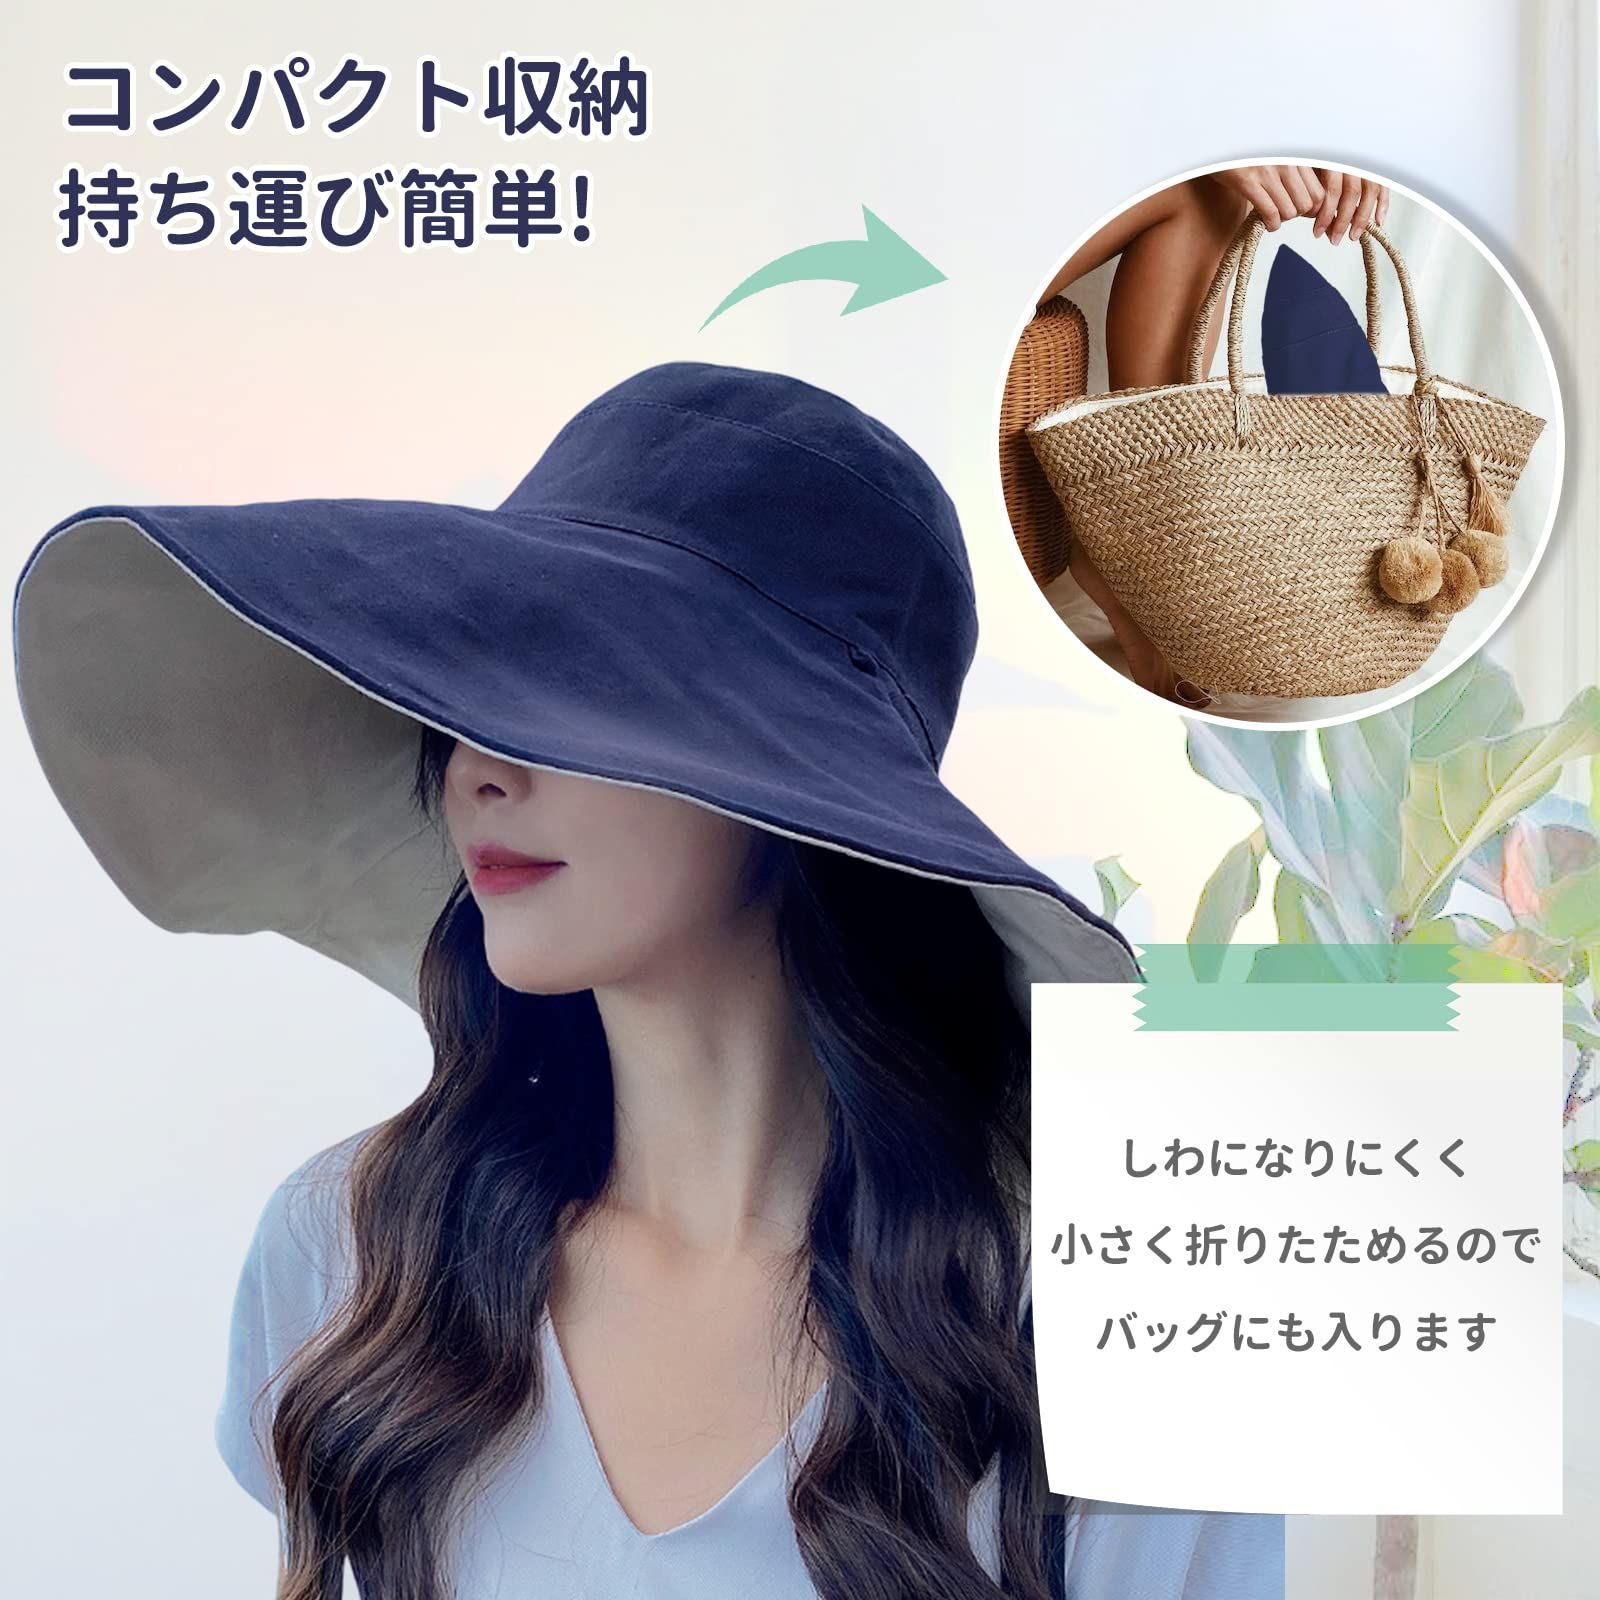 【色: ブラック】Candybay UVカット 帽子 レディース つば広帽子 U